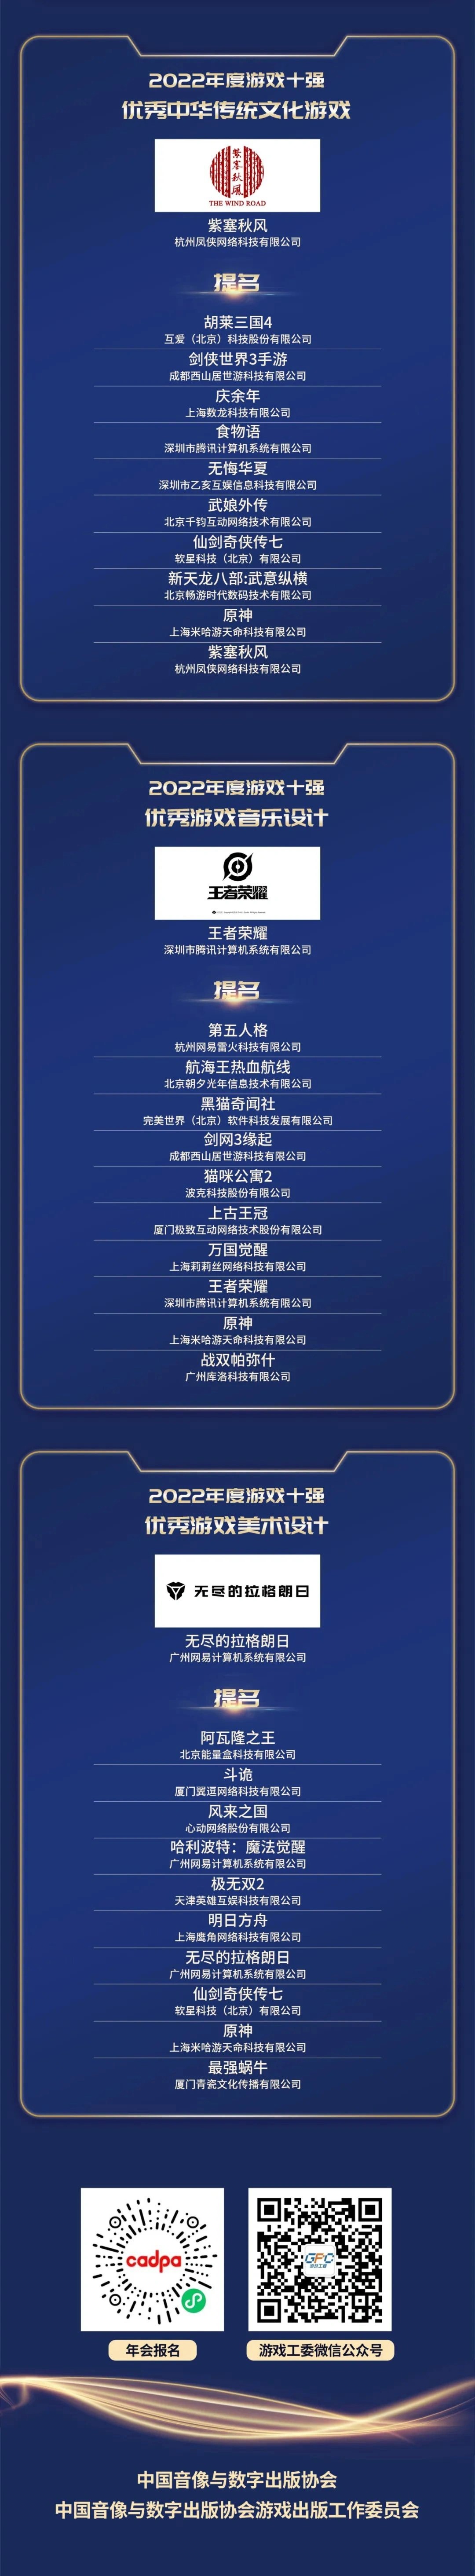 中國游戲產業年會發布2022游戲年度榜 《原神》等上榜